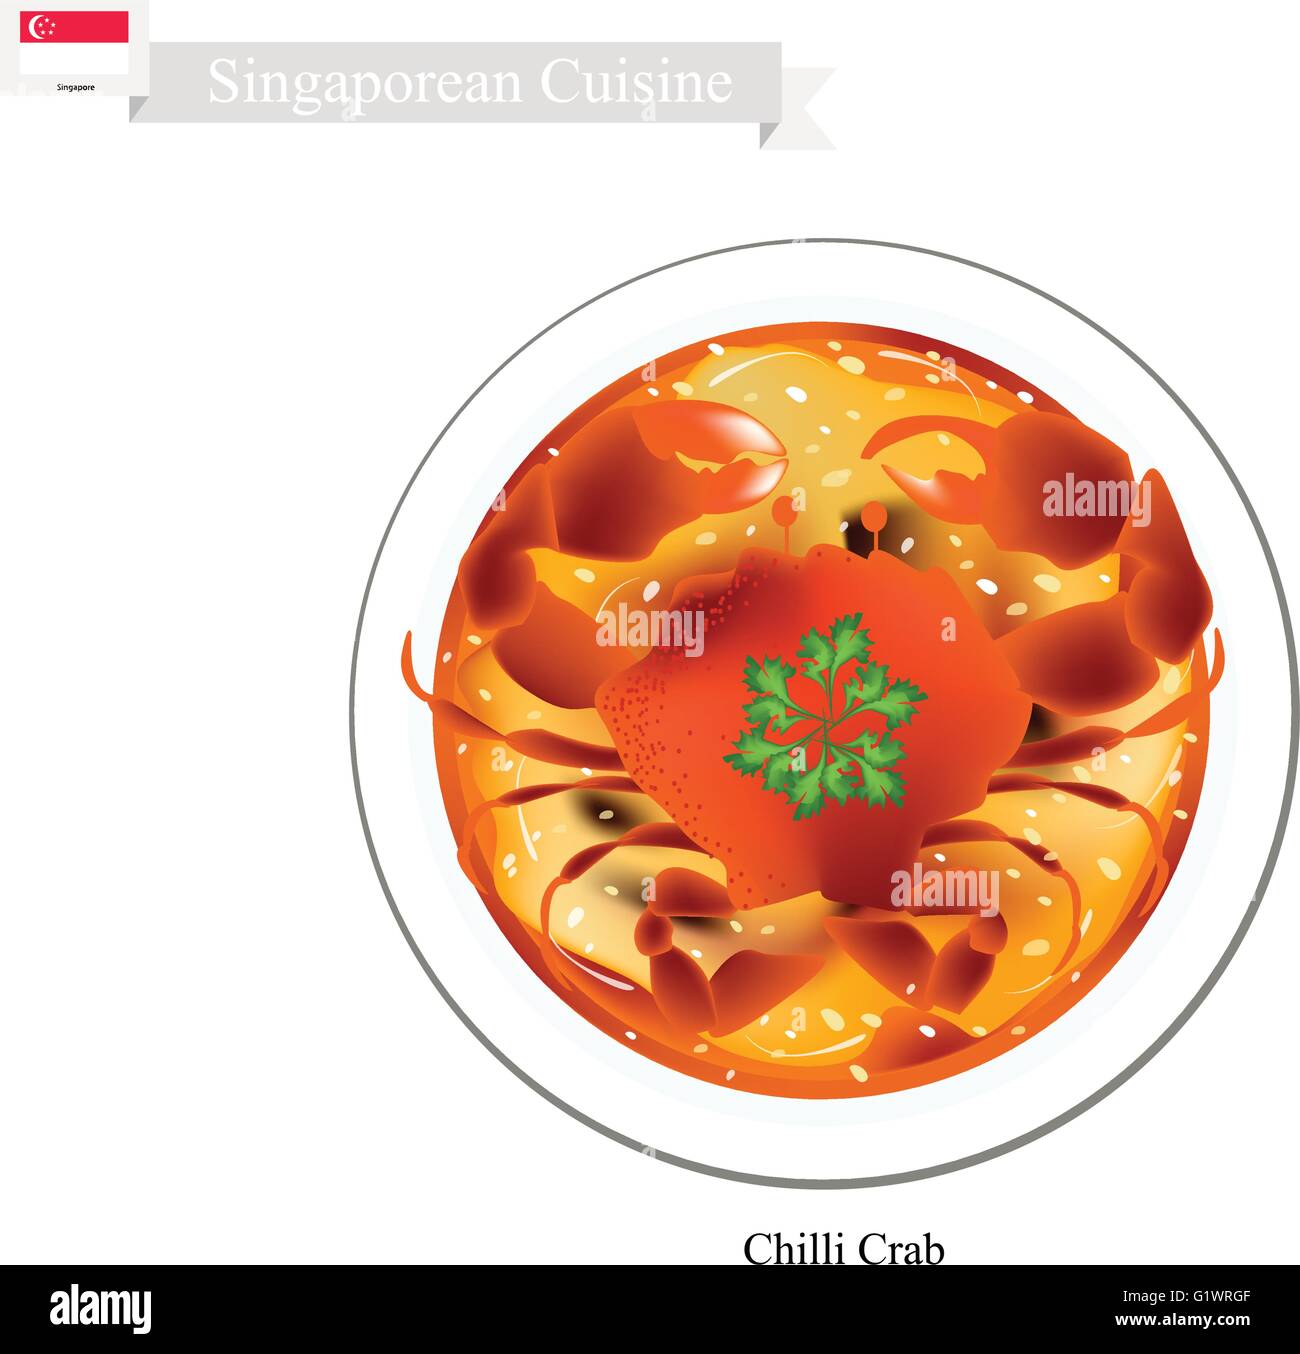 La cuisine singapourienne, Crabe Piment traditionnelles faites de terre sautées Crabe sucré et salé à la tomate et la Sauce Chili. L'un des th Illustration de Vecteur